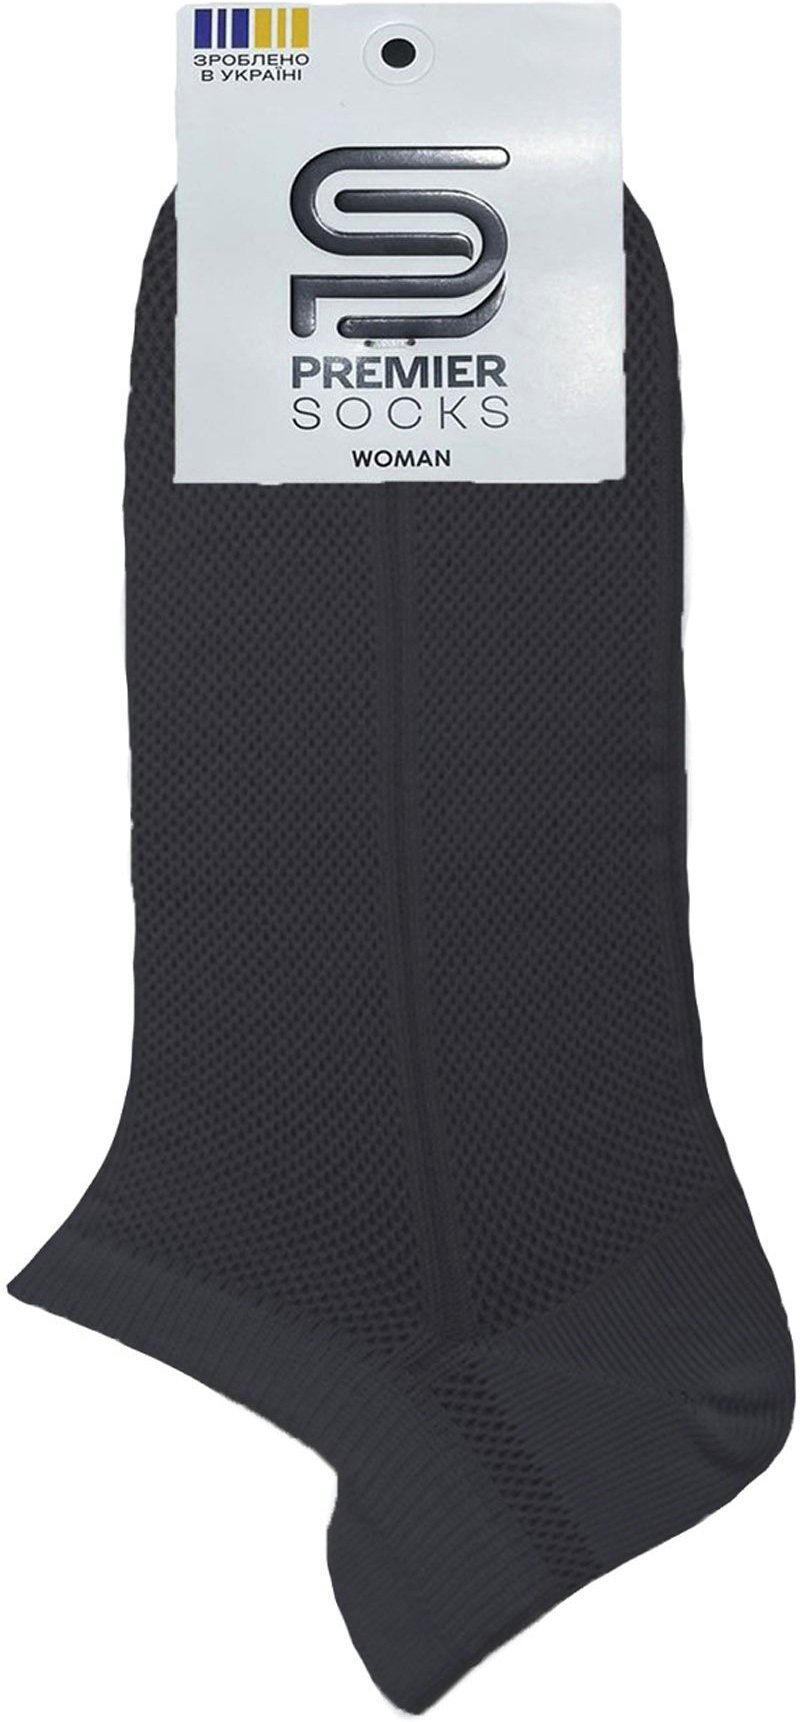 Носки женские Premier Socks 36-40 1 пара черные (4820163318745) фото 2